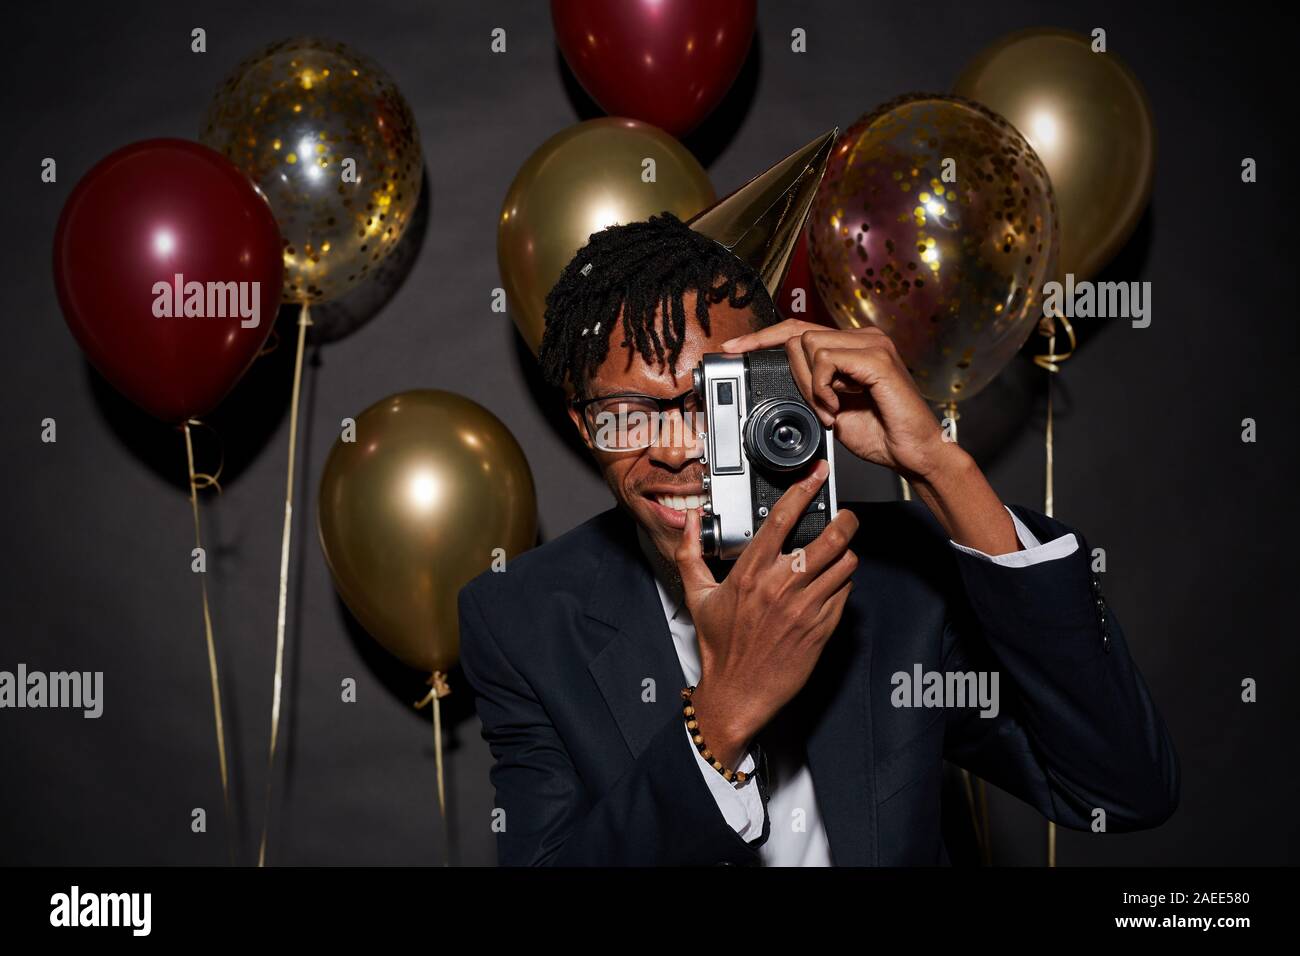 Cintura para arriba retrato del hombre contemporáneo africano sosteniendo la cámara fotográfica mientras posan contra fondo negro con parte de globos, disparo con flash Foto de stock